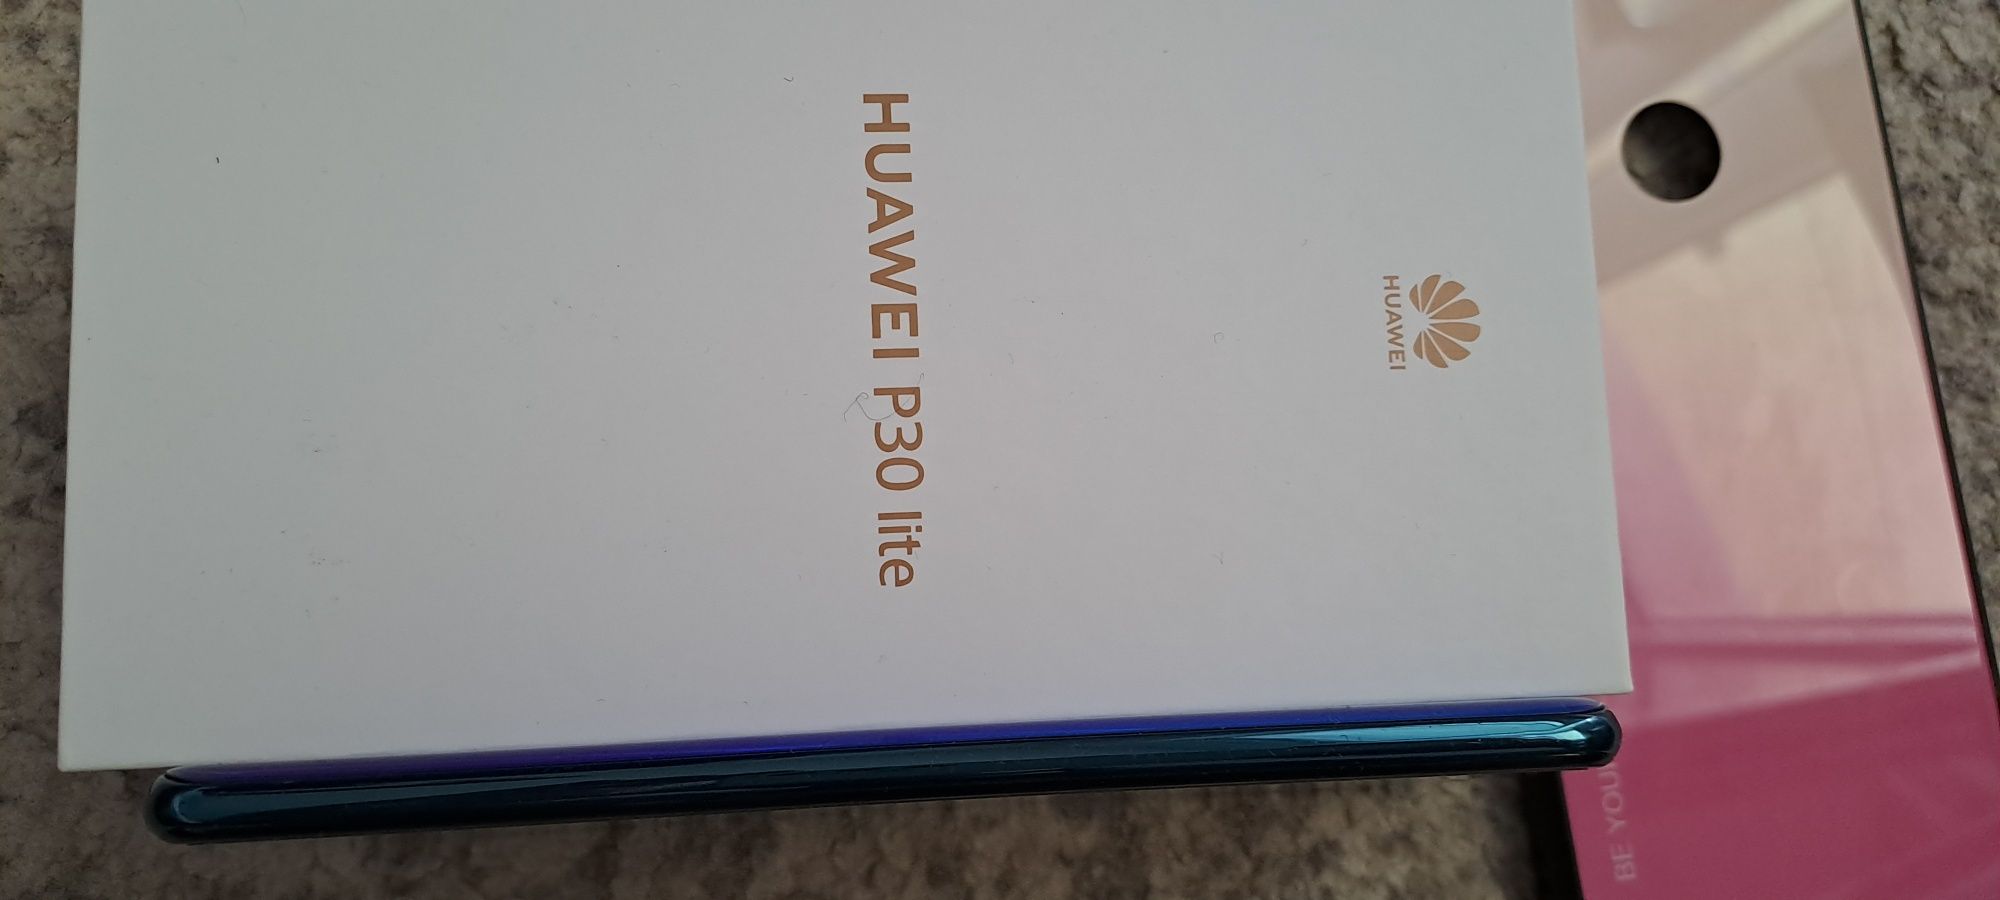 Huawei P30 lite folosit foarte puțin ca nou